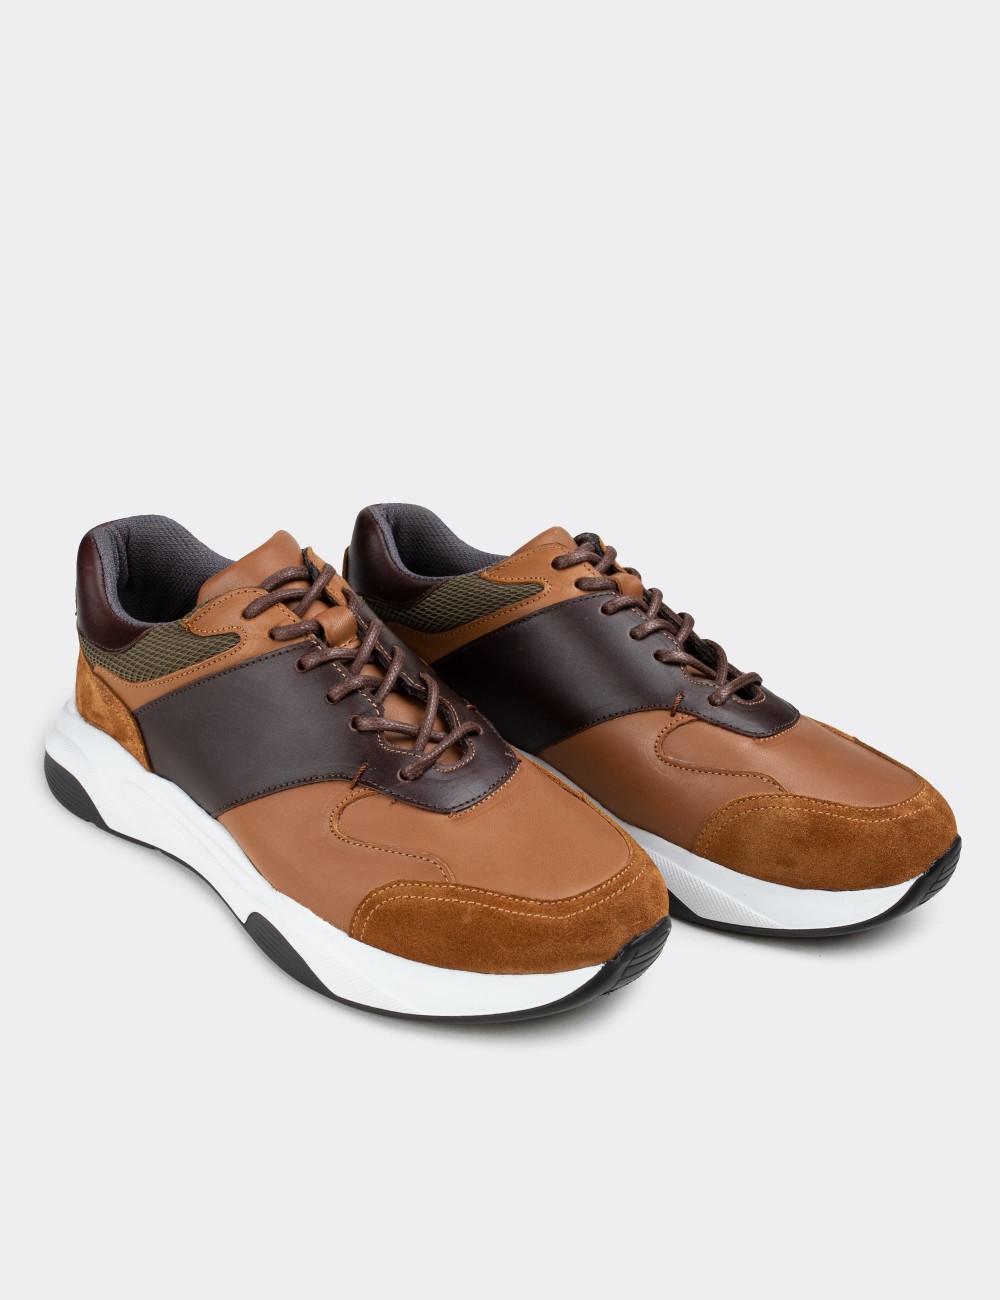 Tan  Leather Sneakers - 01718MTBAT01